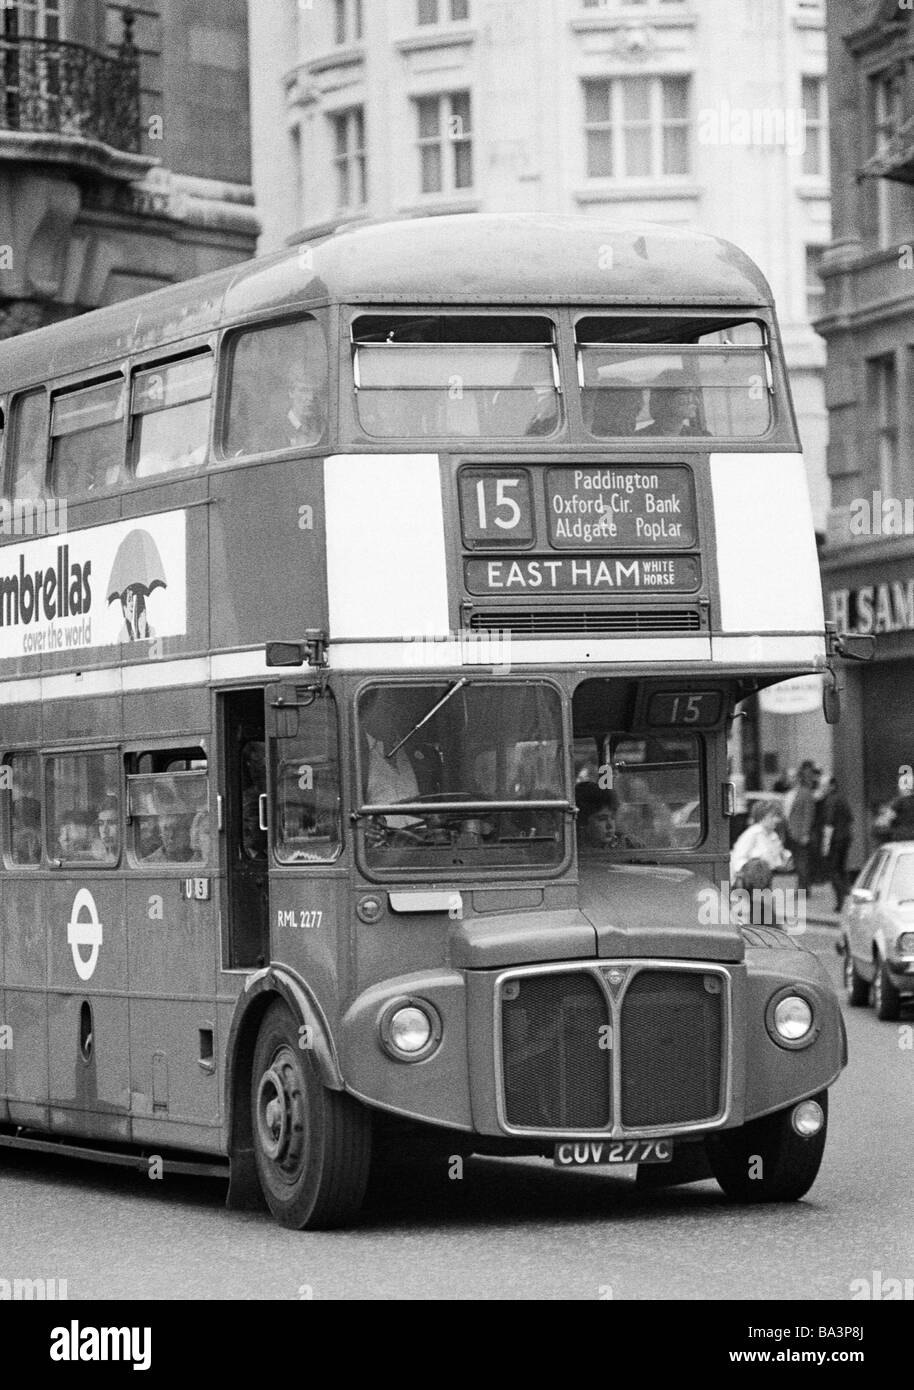 Années 70, photo en noir et blanc, le trafic routier, véhicule de transport public, les bus à double étage, AEC Routemaster, Grande-Bretagne, Angleterre, Londres Banque D'Images